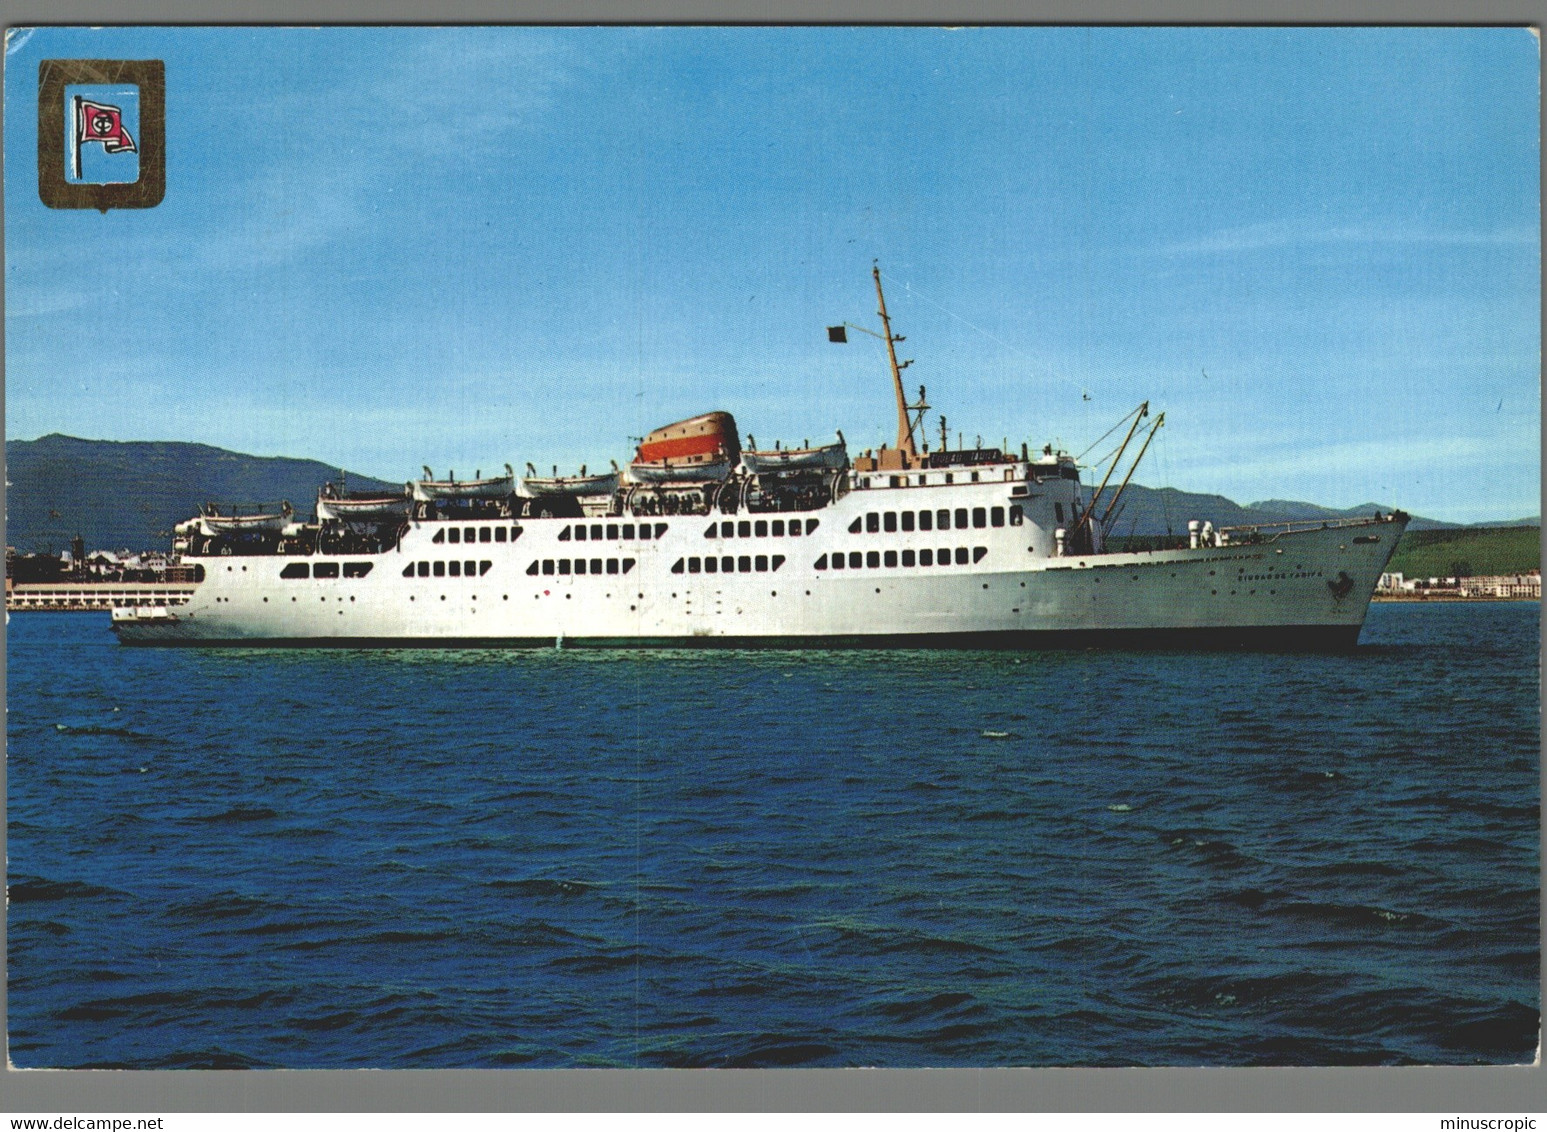 CPM Bateaux - Traversée Du Détroit De Gibraltar - Ferries